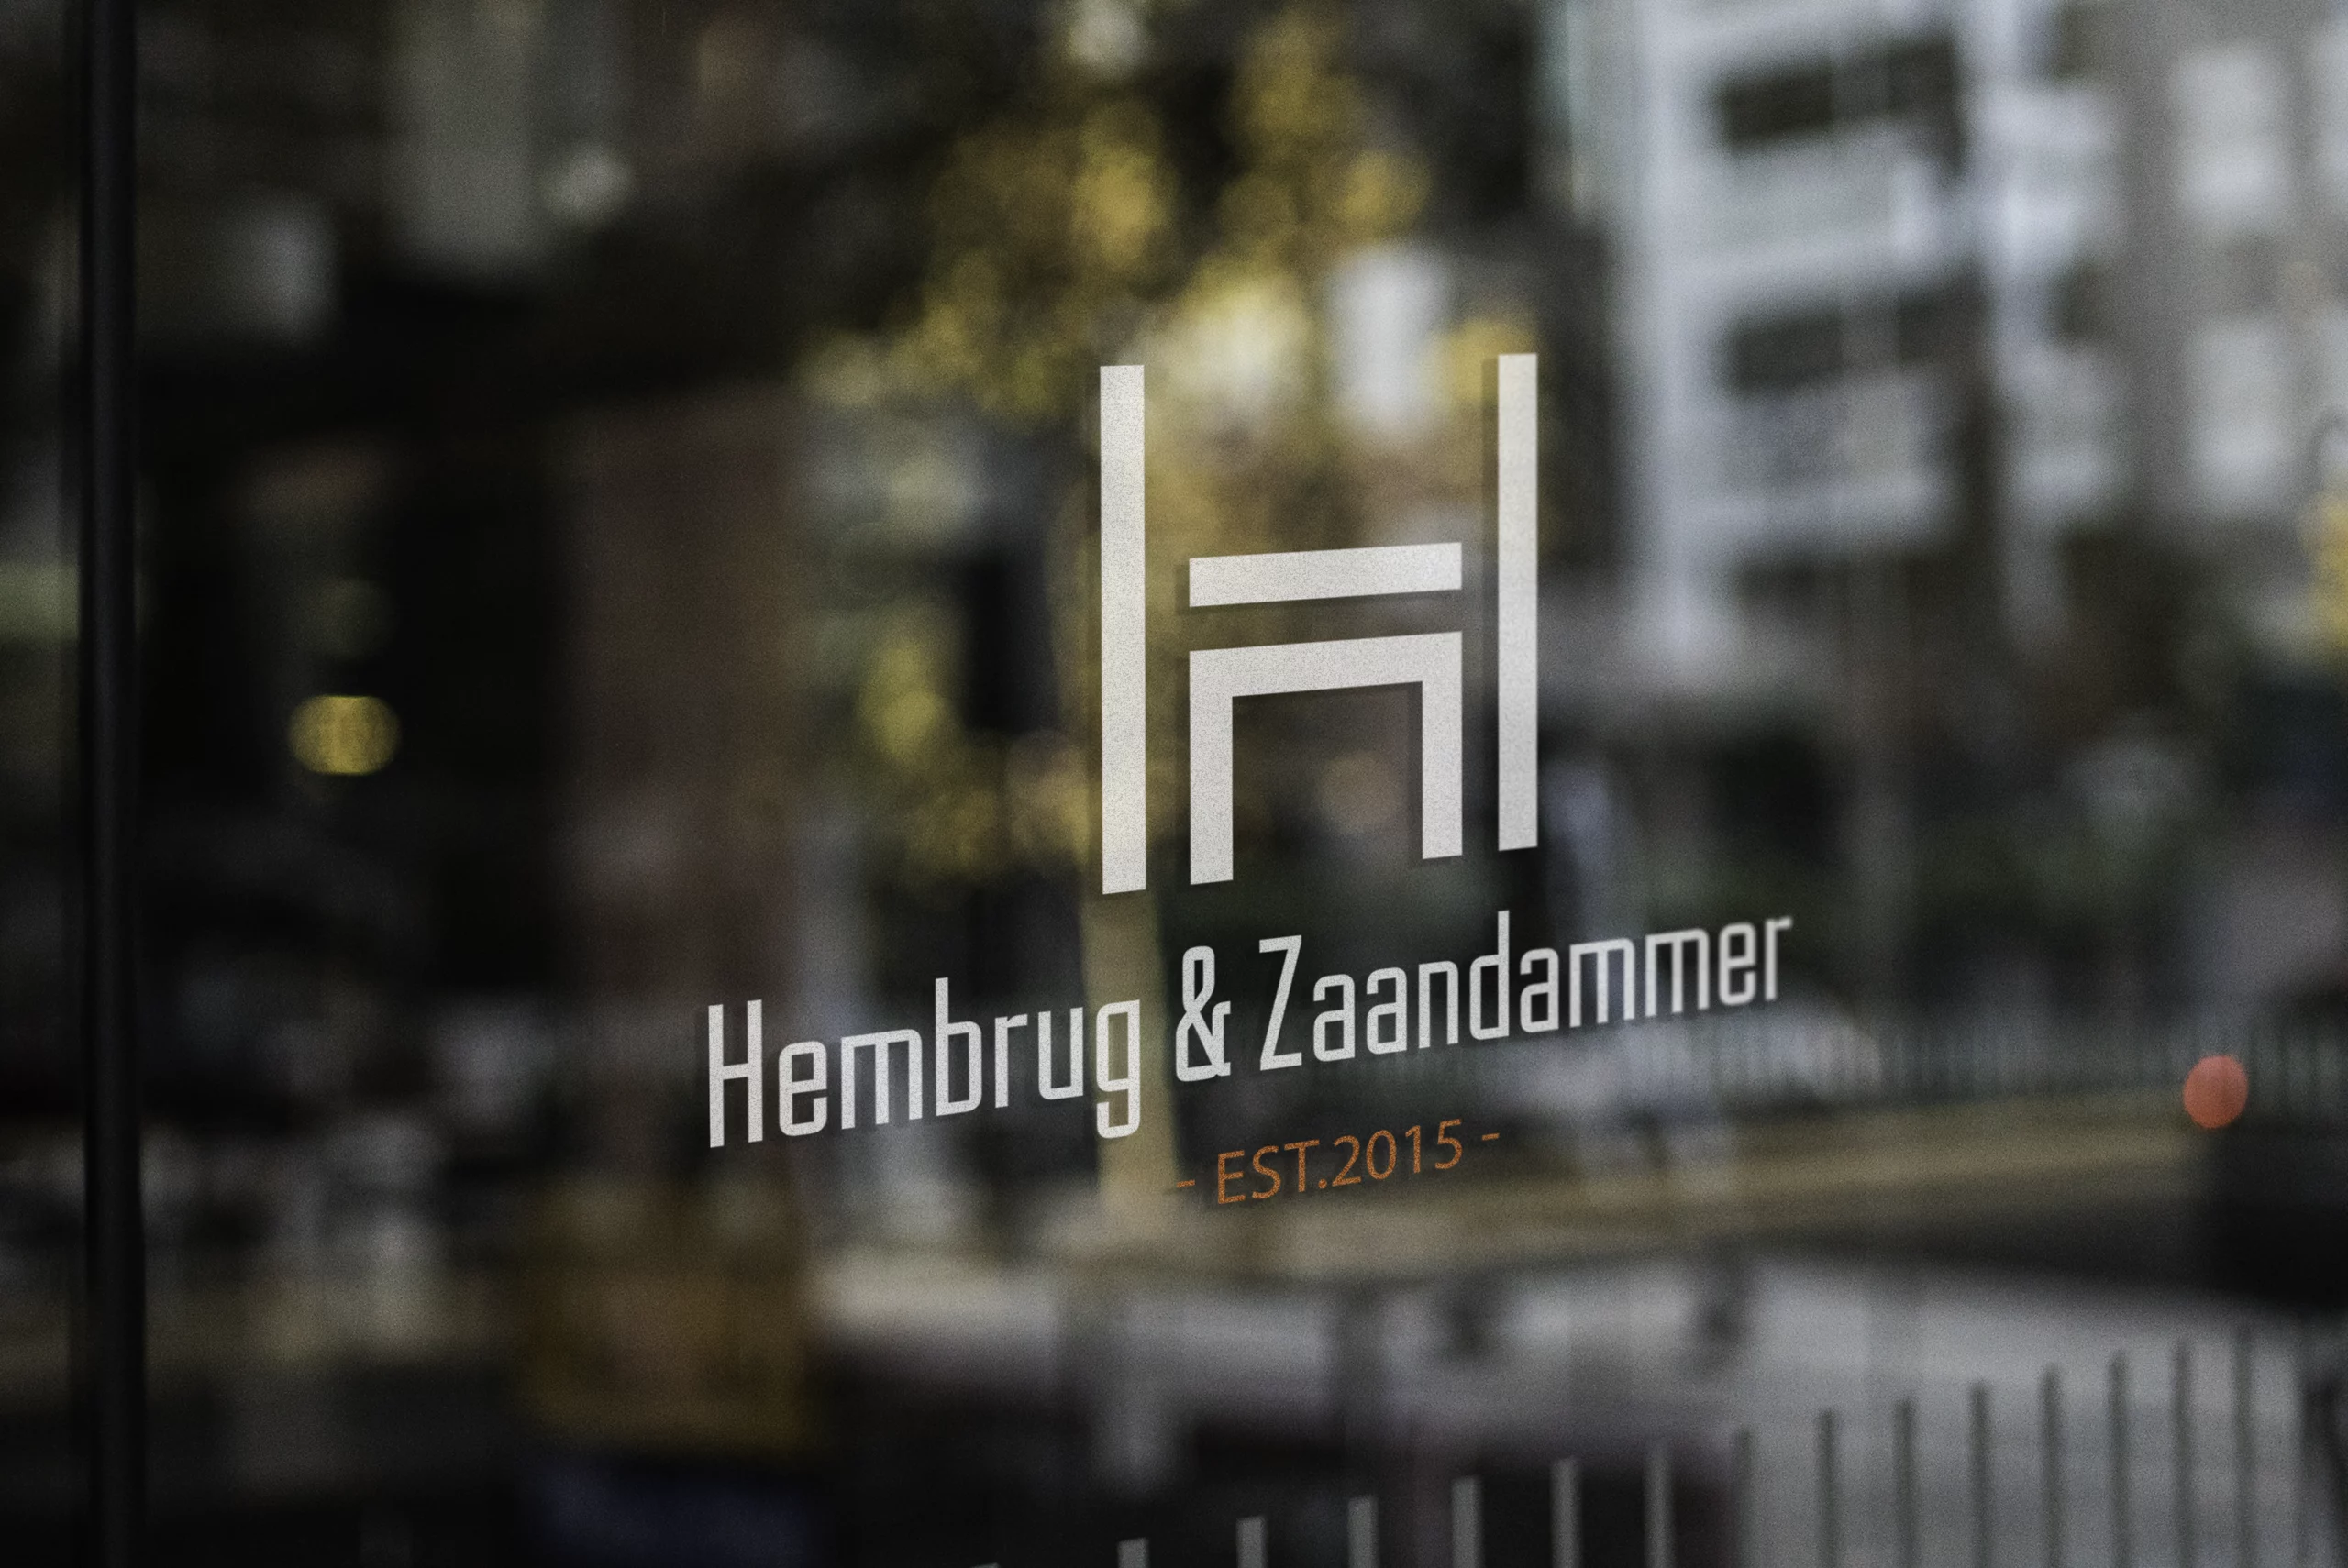 Hembrug-en-zaandammer-logo-4-panbranding